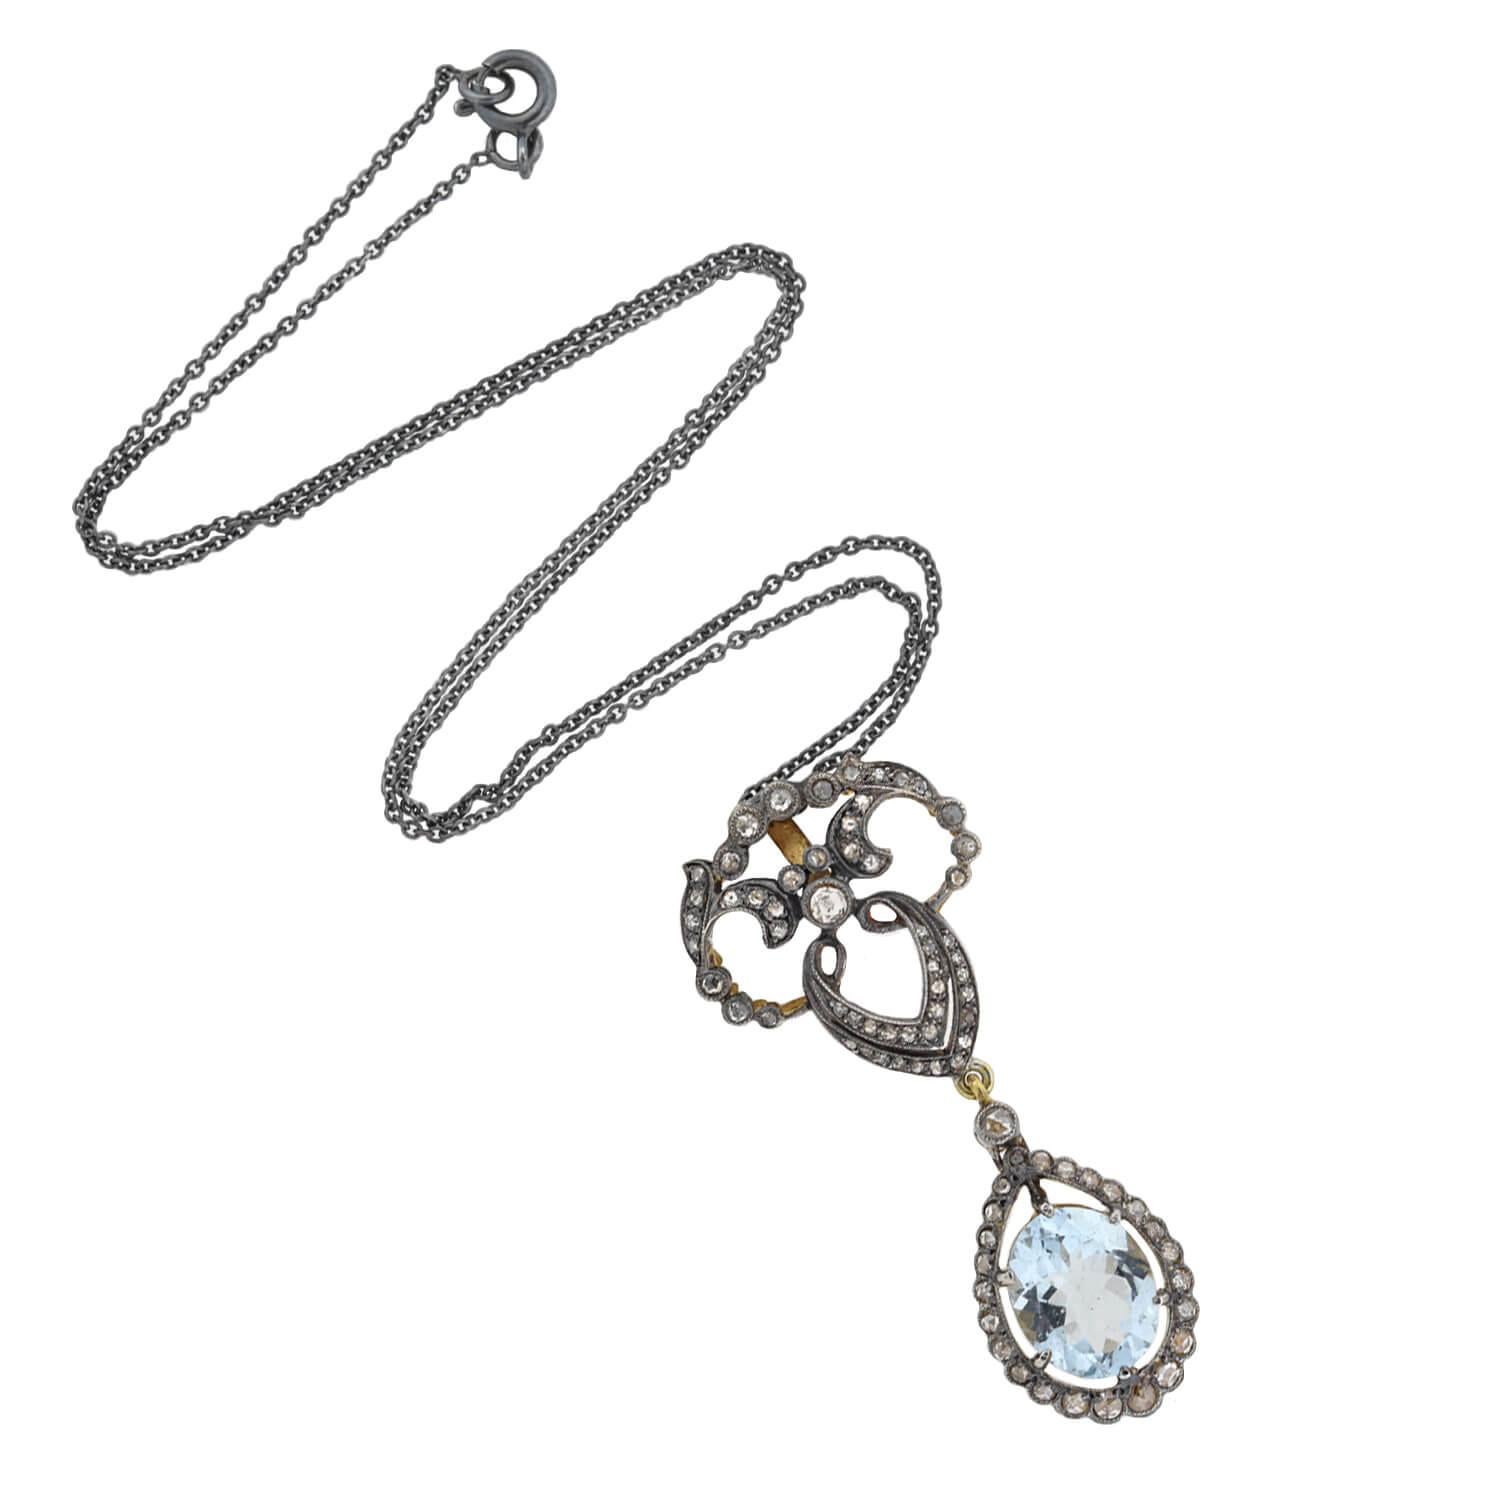 Un merveilleux collier pendentif aqua et diamant de l'époque victorienne (1880s) ! Réalisée en or jaune 18 carats et en argent sterling, cette magnifique pièce se compose d'un pendentif en forme de goutte suspendu à une simple chaîne en argent